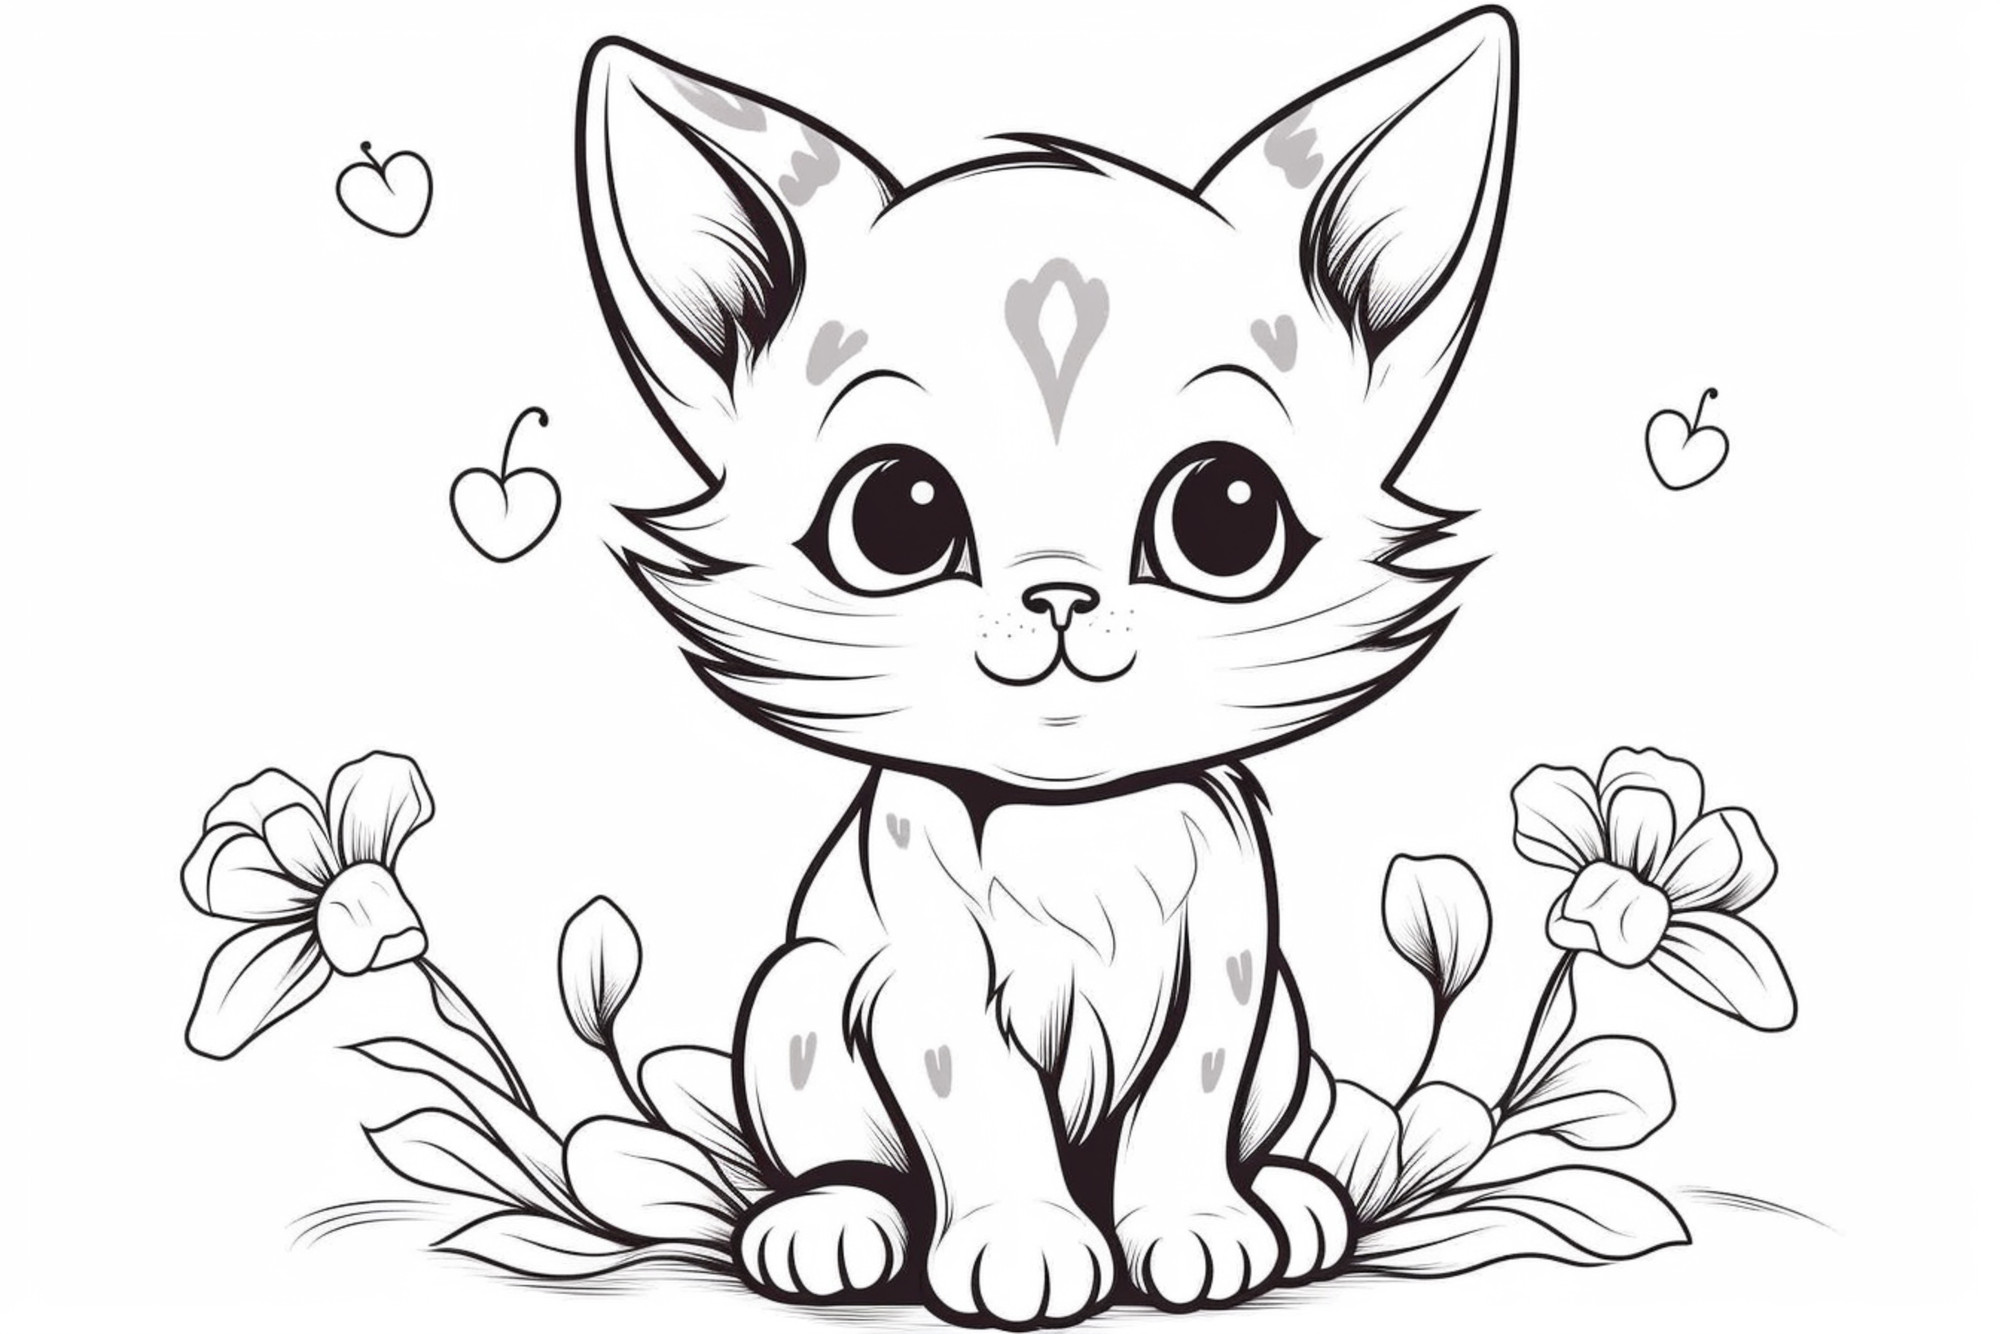 Раскраска для детей: рисунок котенка в траве с цветам